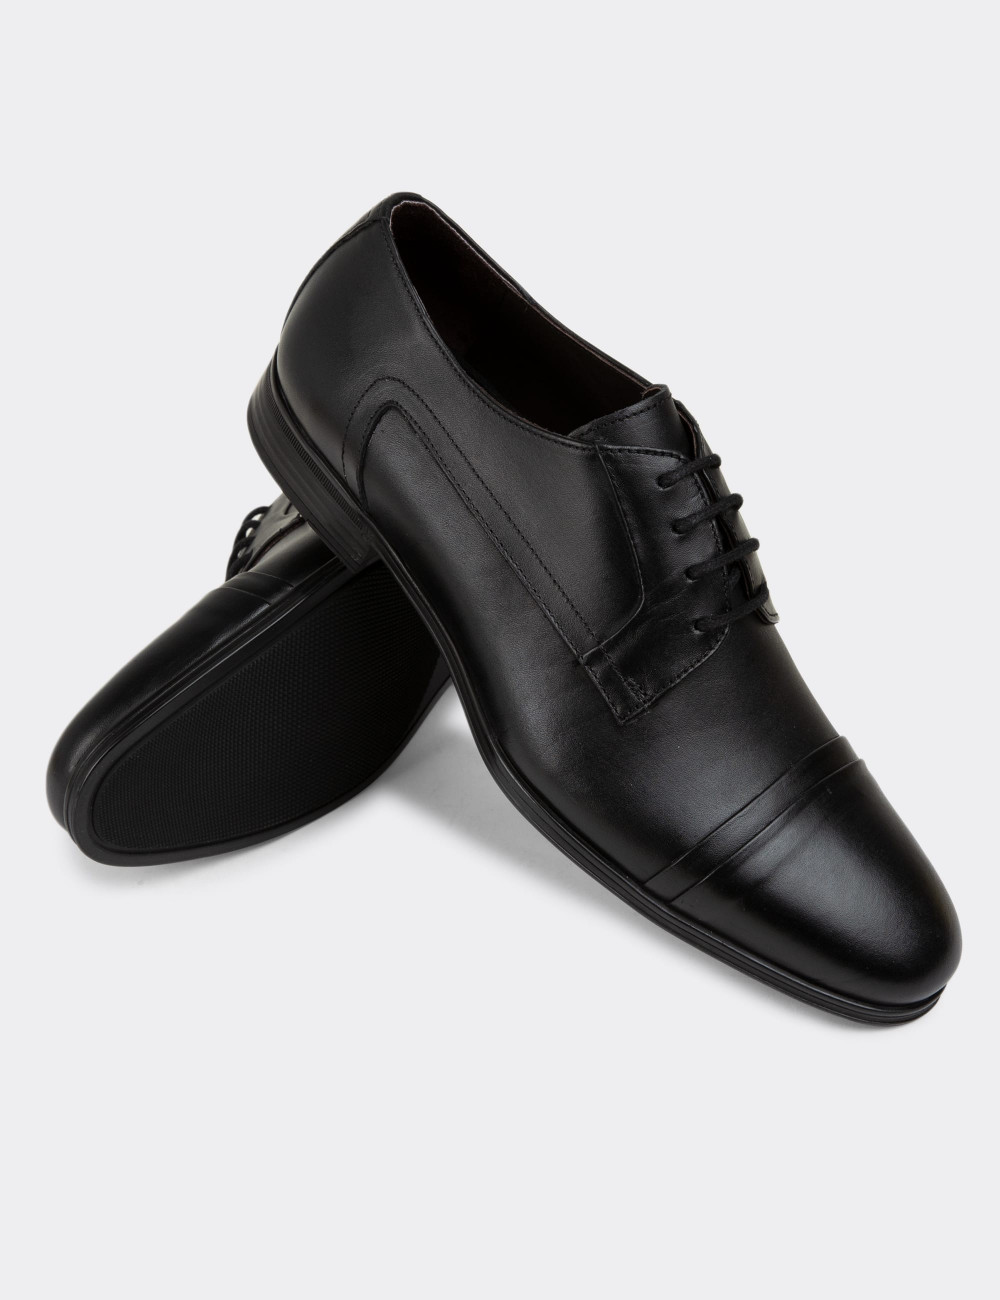 Hakiki Deri Siyah Klasik Erkek Ayakkabı - 01943MSYHC01